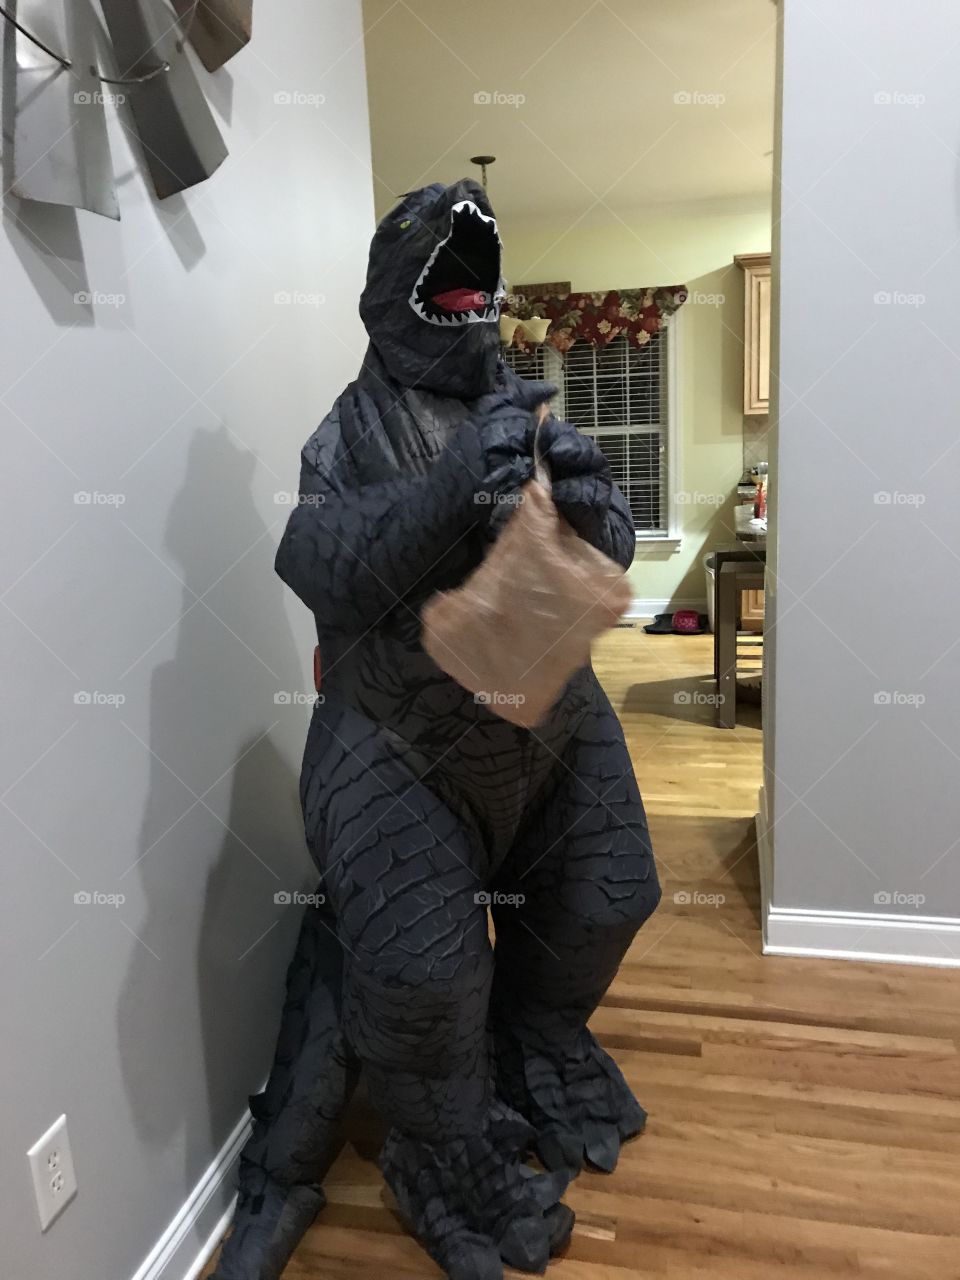 Godzilla costume